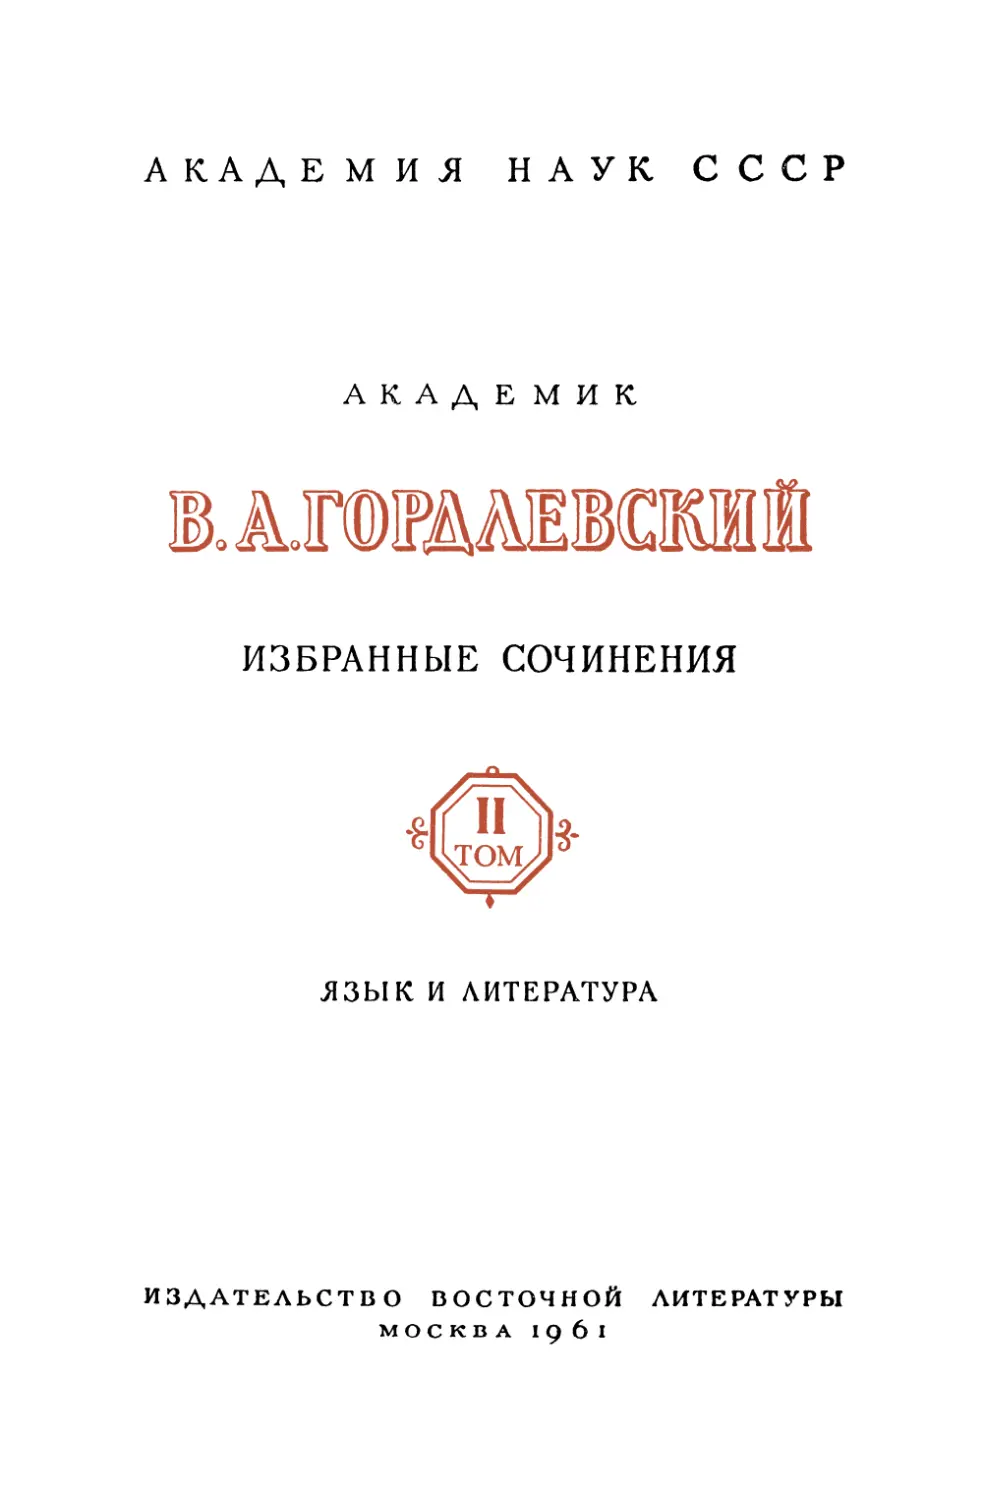 Гордлевский В.А. Избранные сочинения. т.II. Язык и литература - 1961